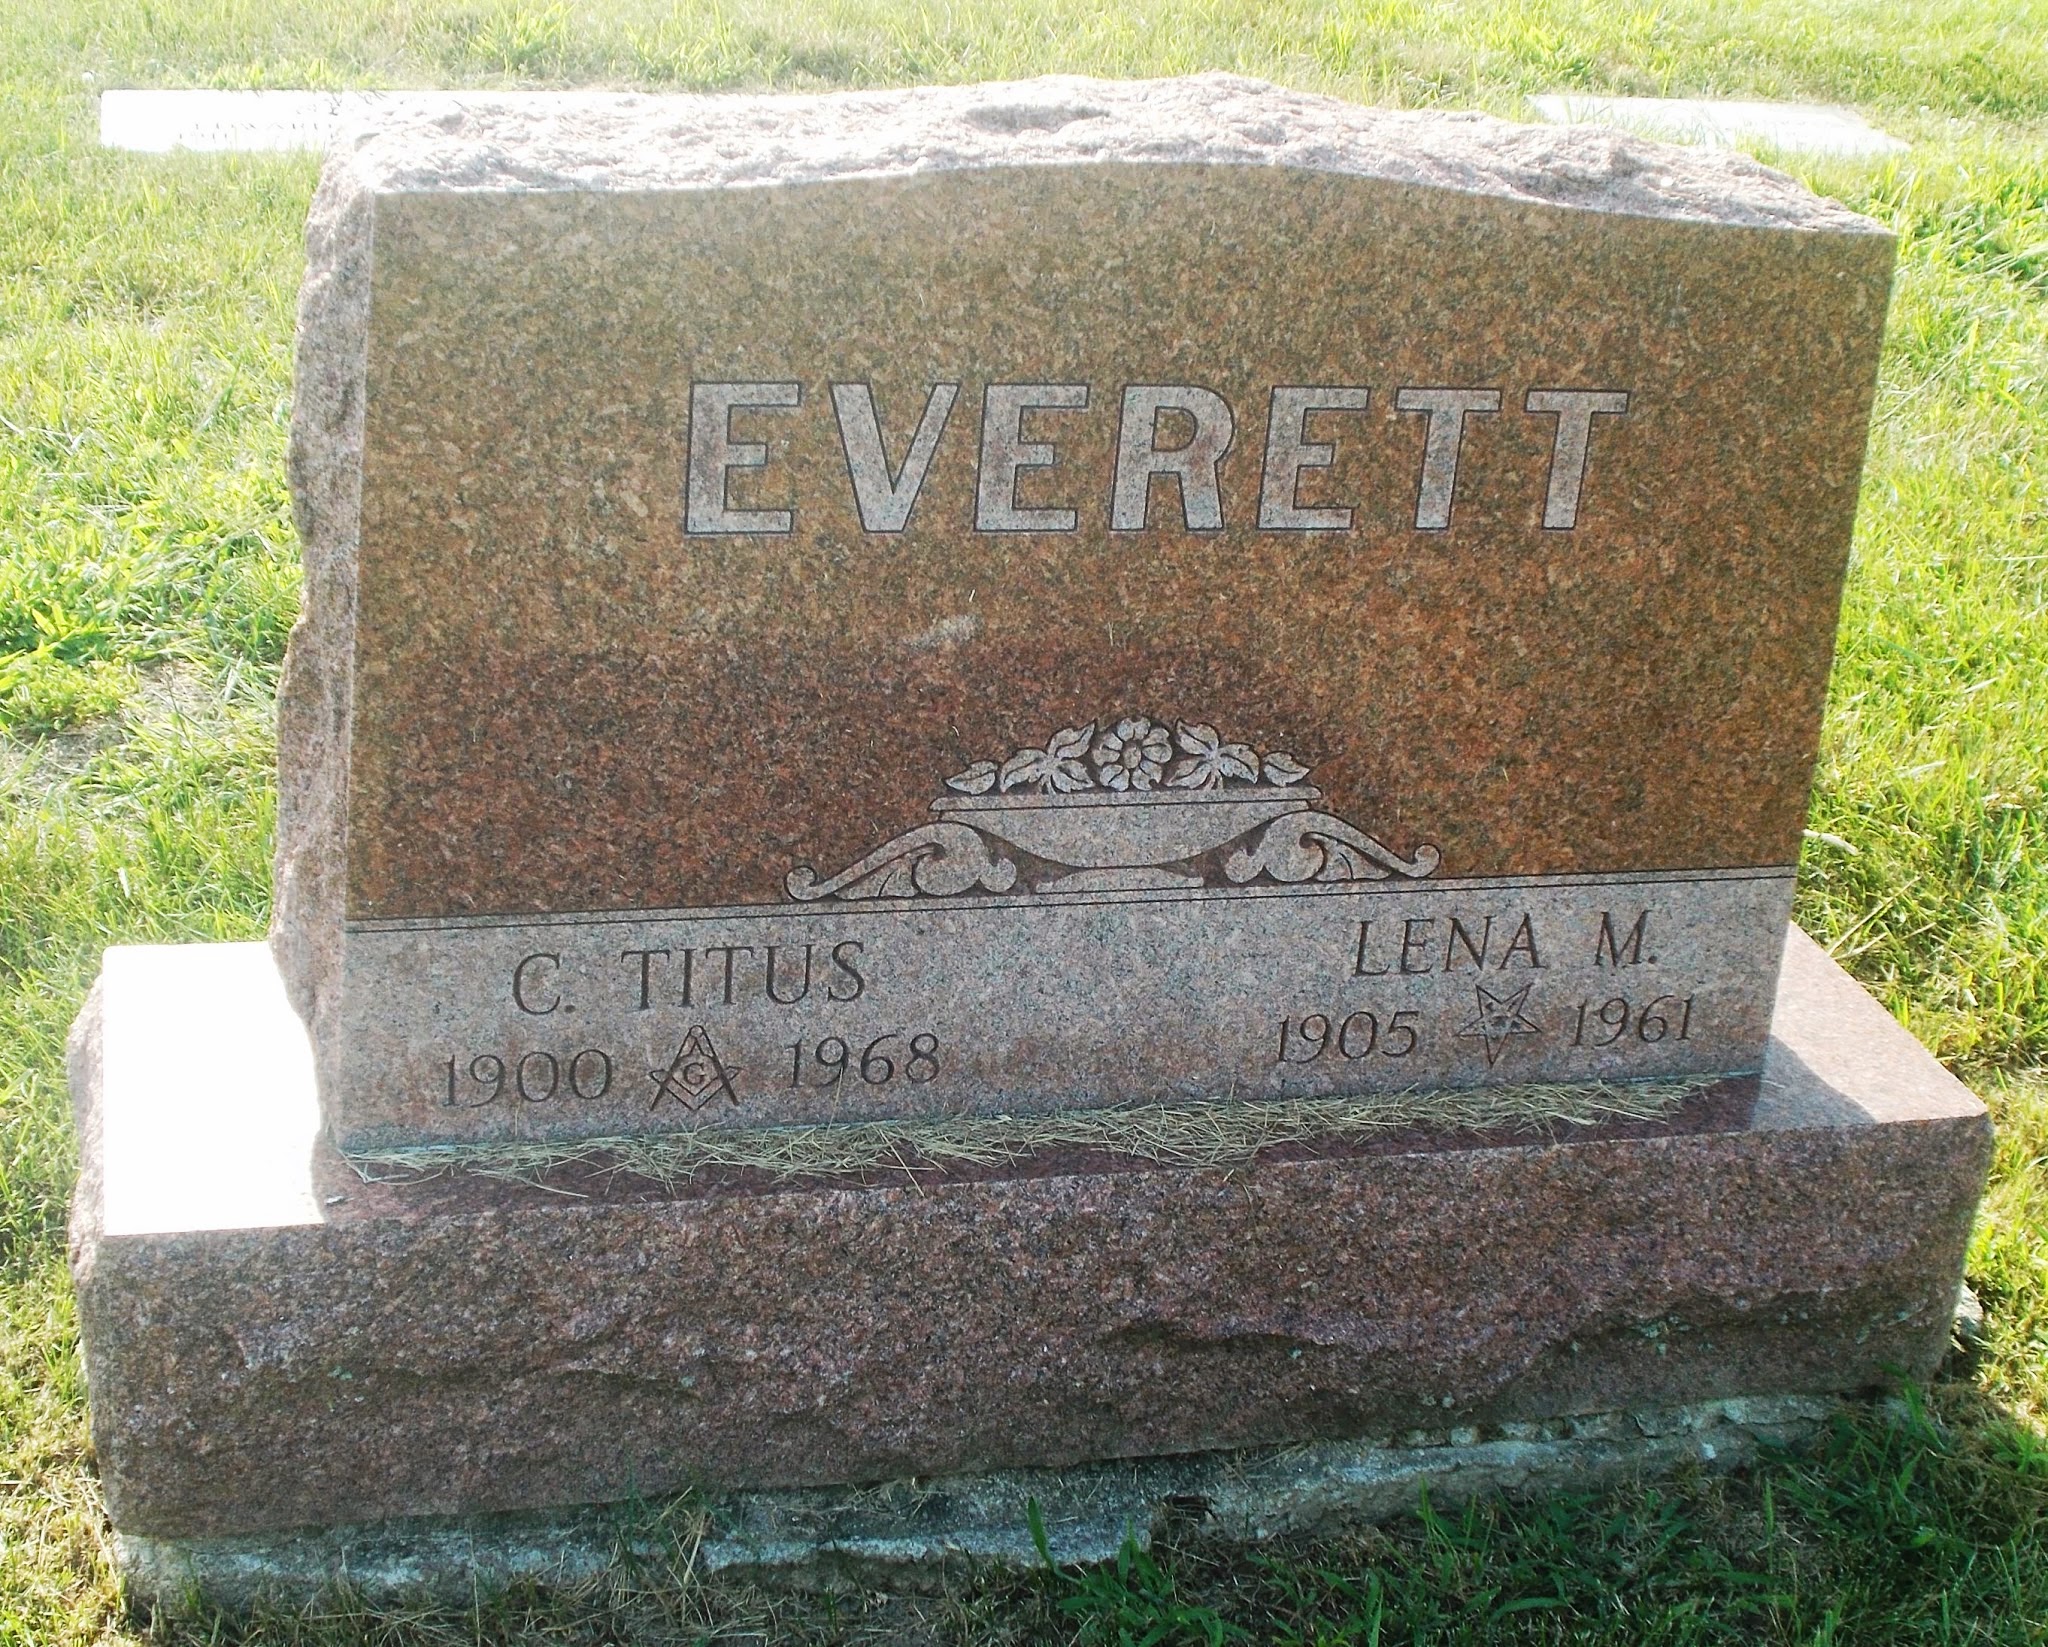 C Titus Everett